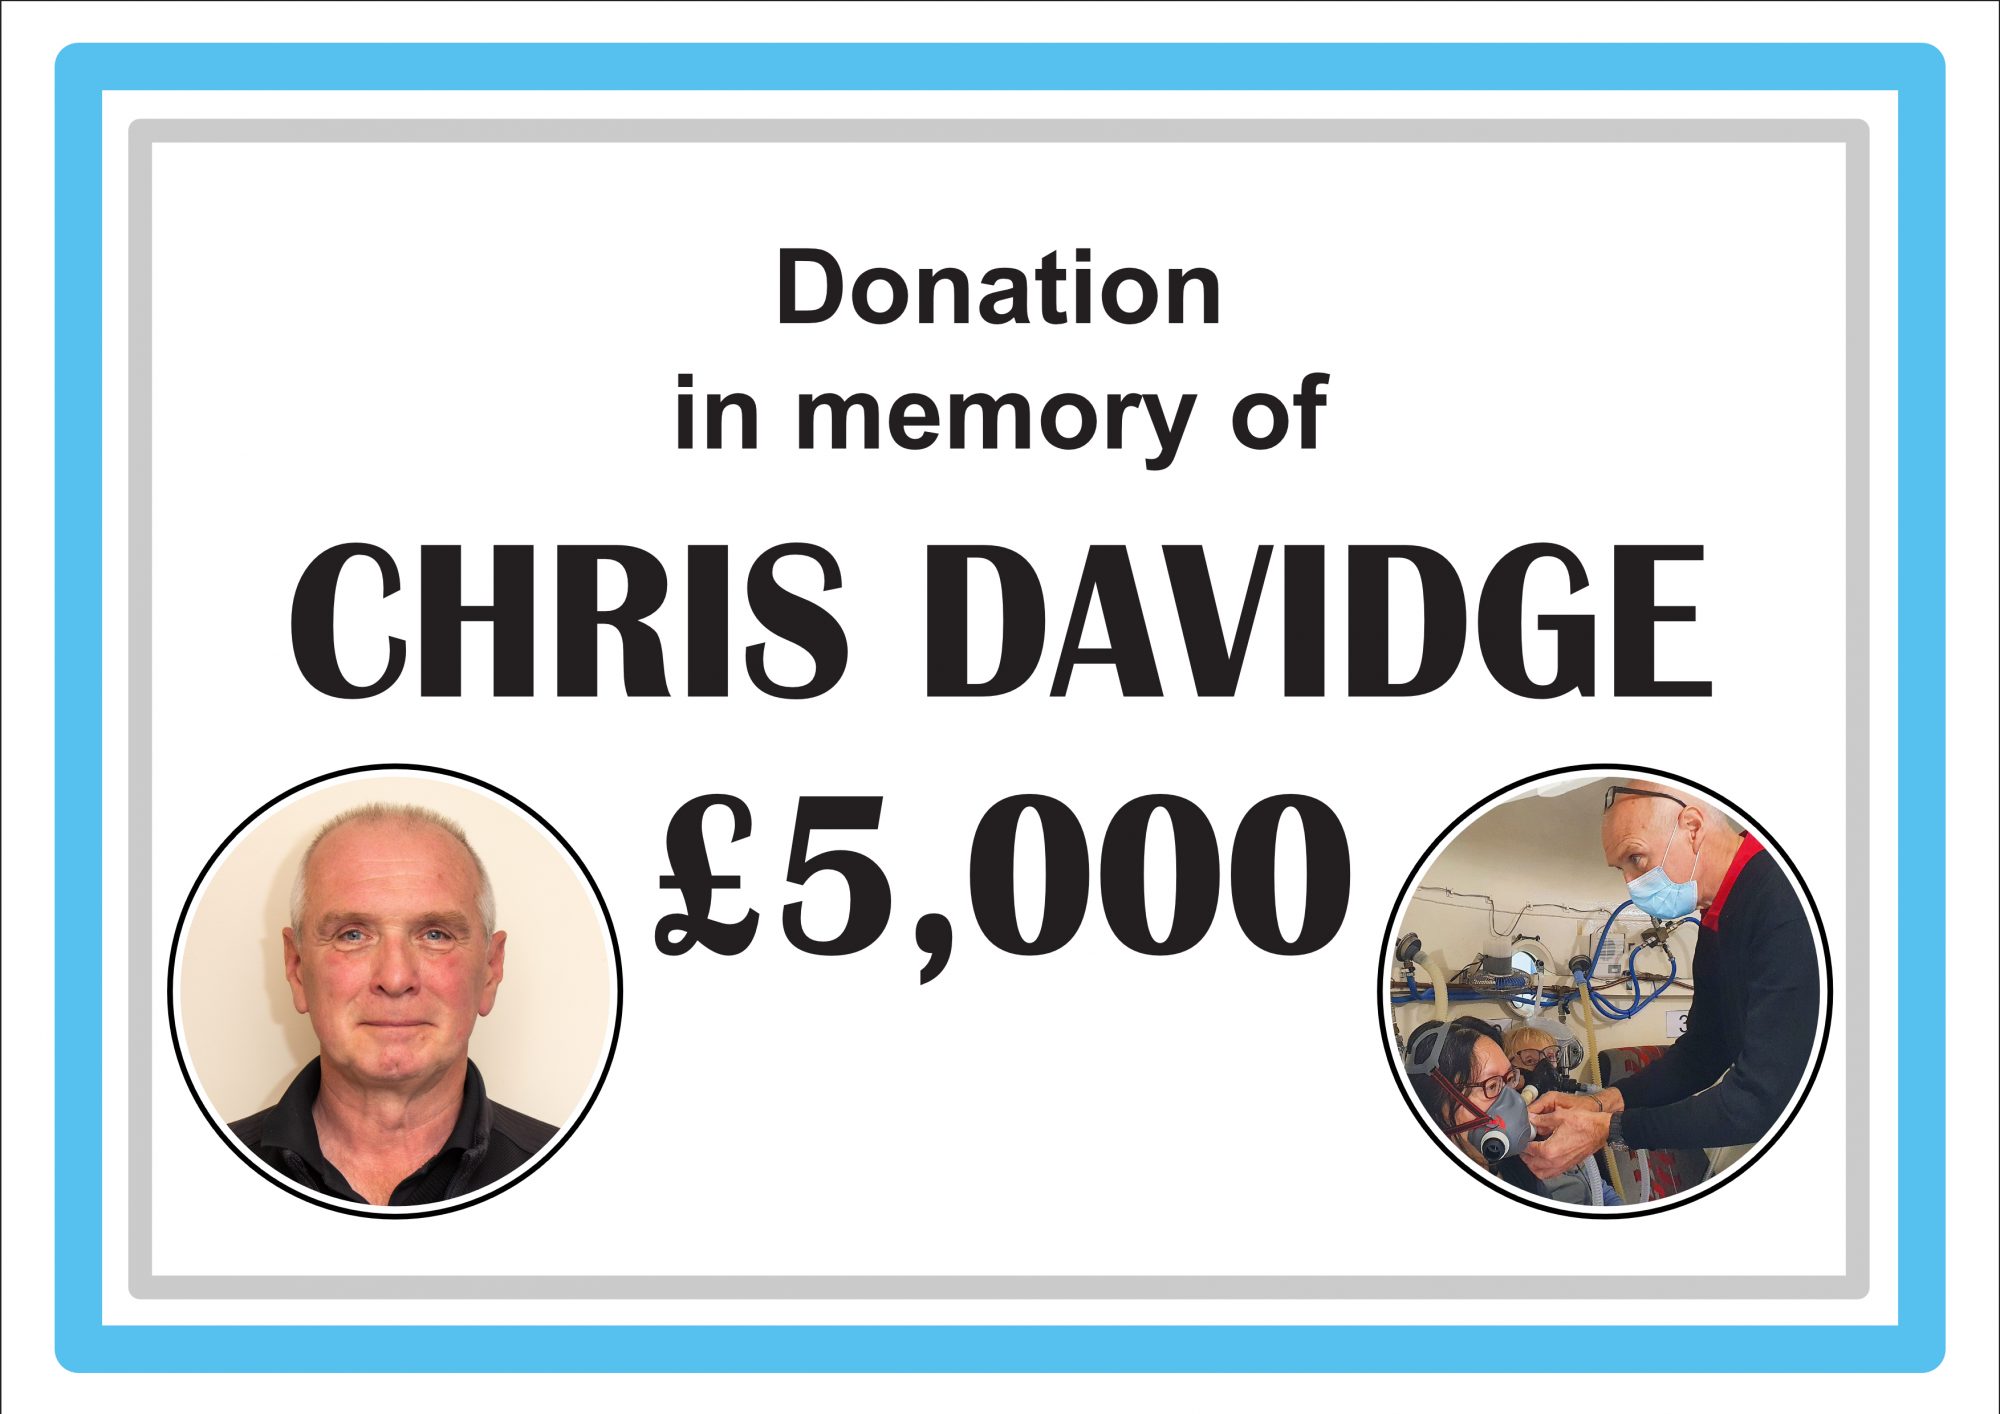 In Memory of Chris Davidge - £5,000